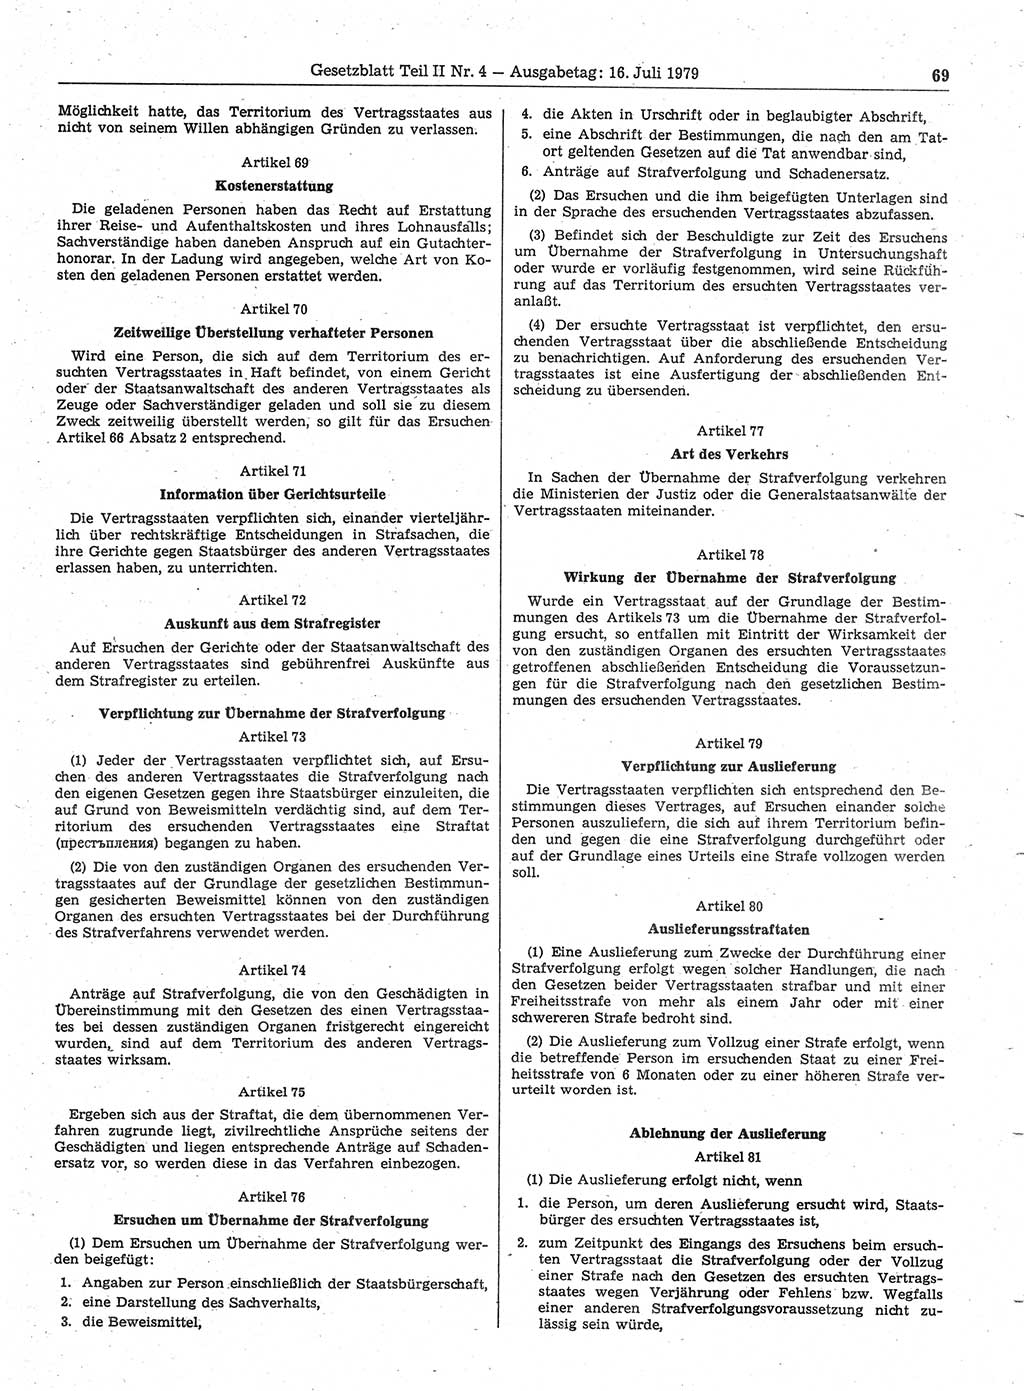 Gesetzblatt (GBl.) der Deutschen Demokratischen Republik (DDR) Teil ⅠⅠ 1979, Seite 69 (GBl. DDR ⅠⅠ 1979, S. 69)